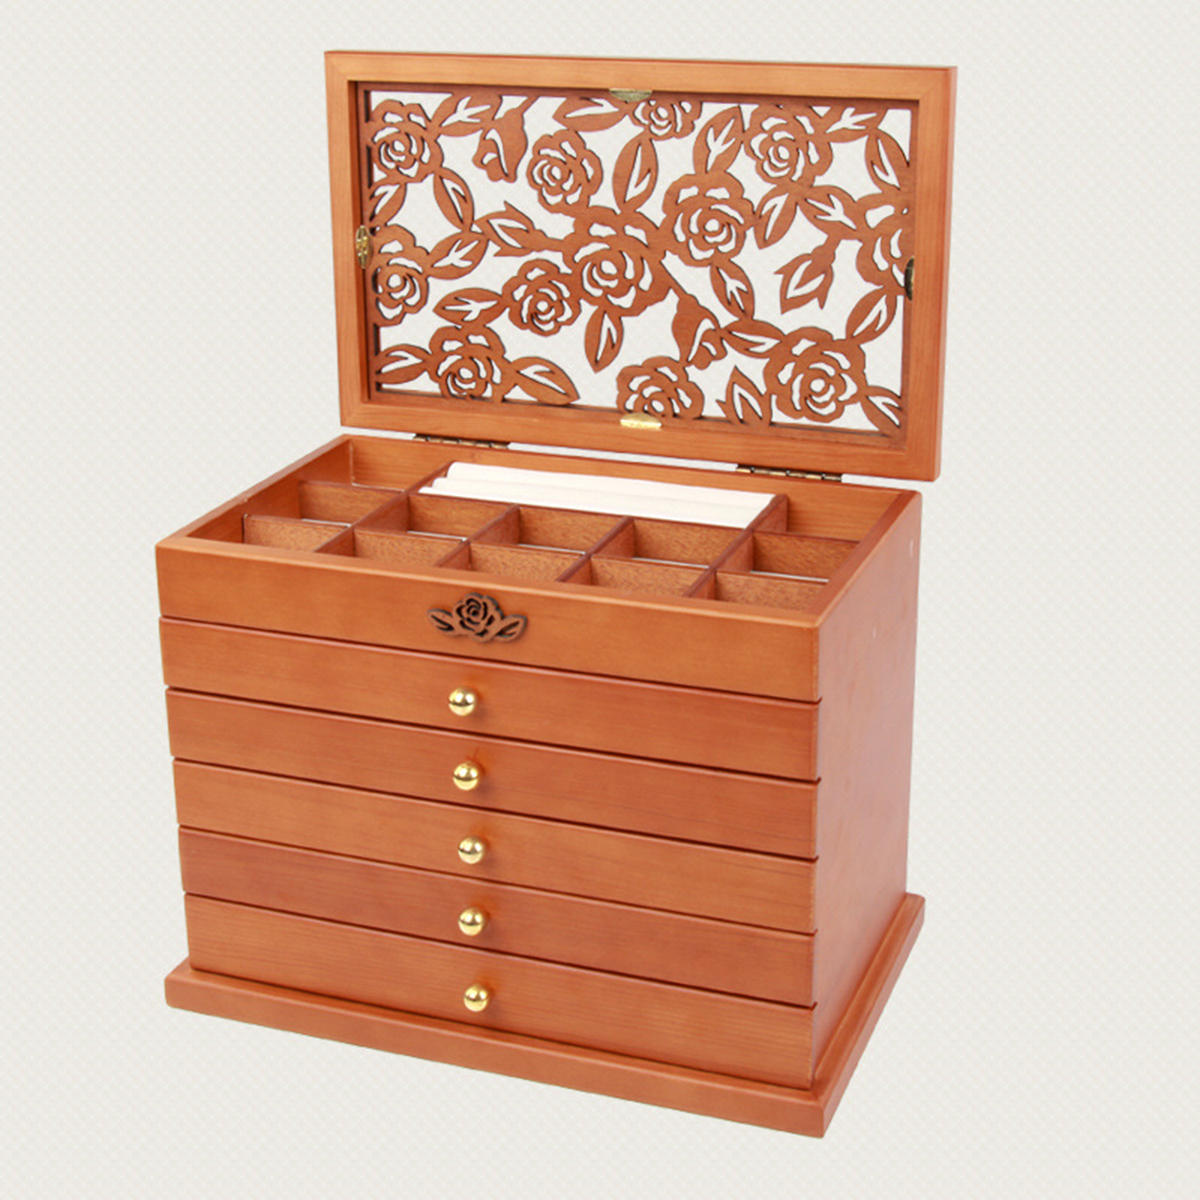 

5 Layers Wooden Jewelery Box Storage Box Desktop Necklace Jewelry Organizer